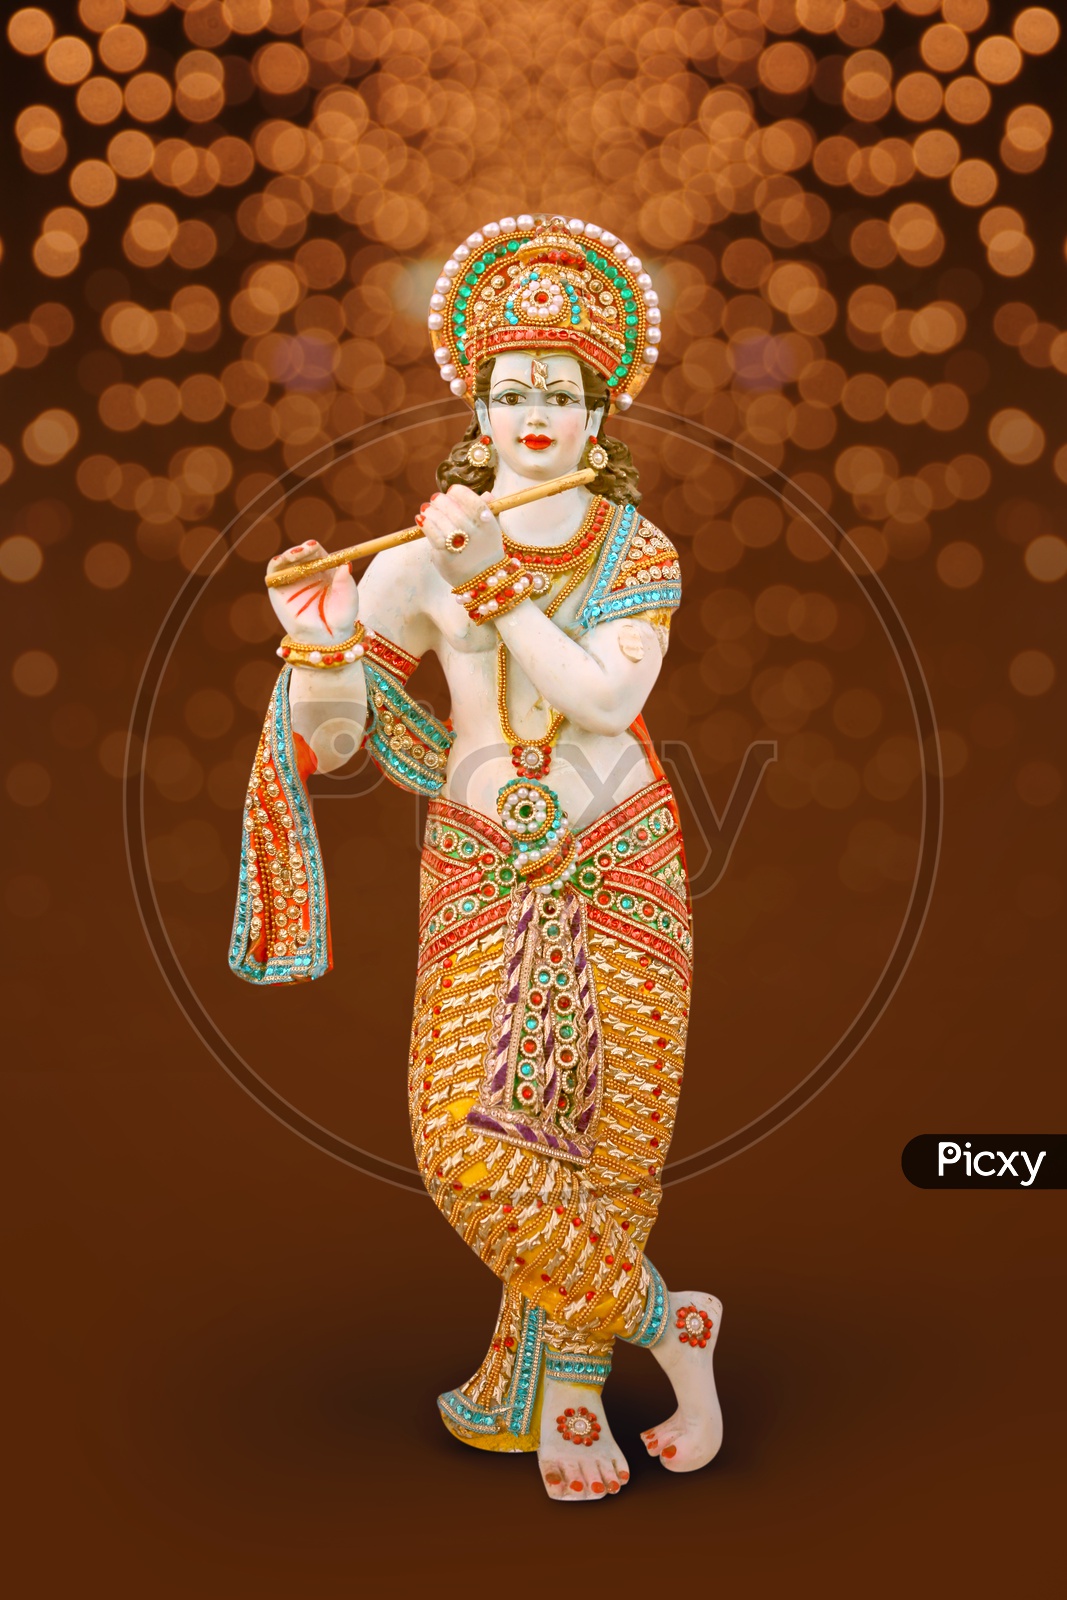 Image of Lord Sri Krishna Idol with beautiful bokeh in the ...